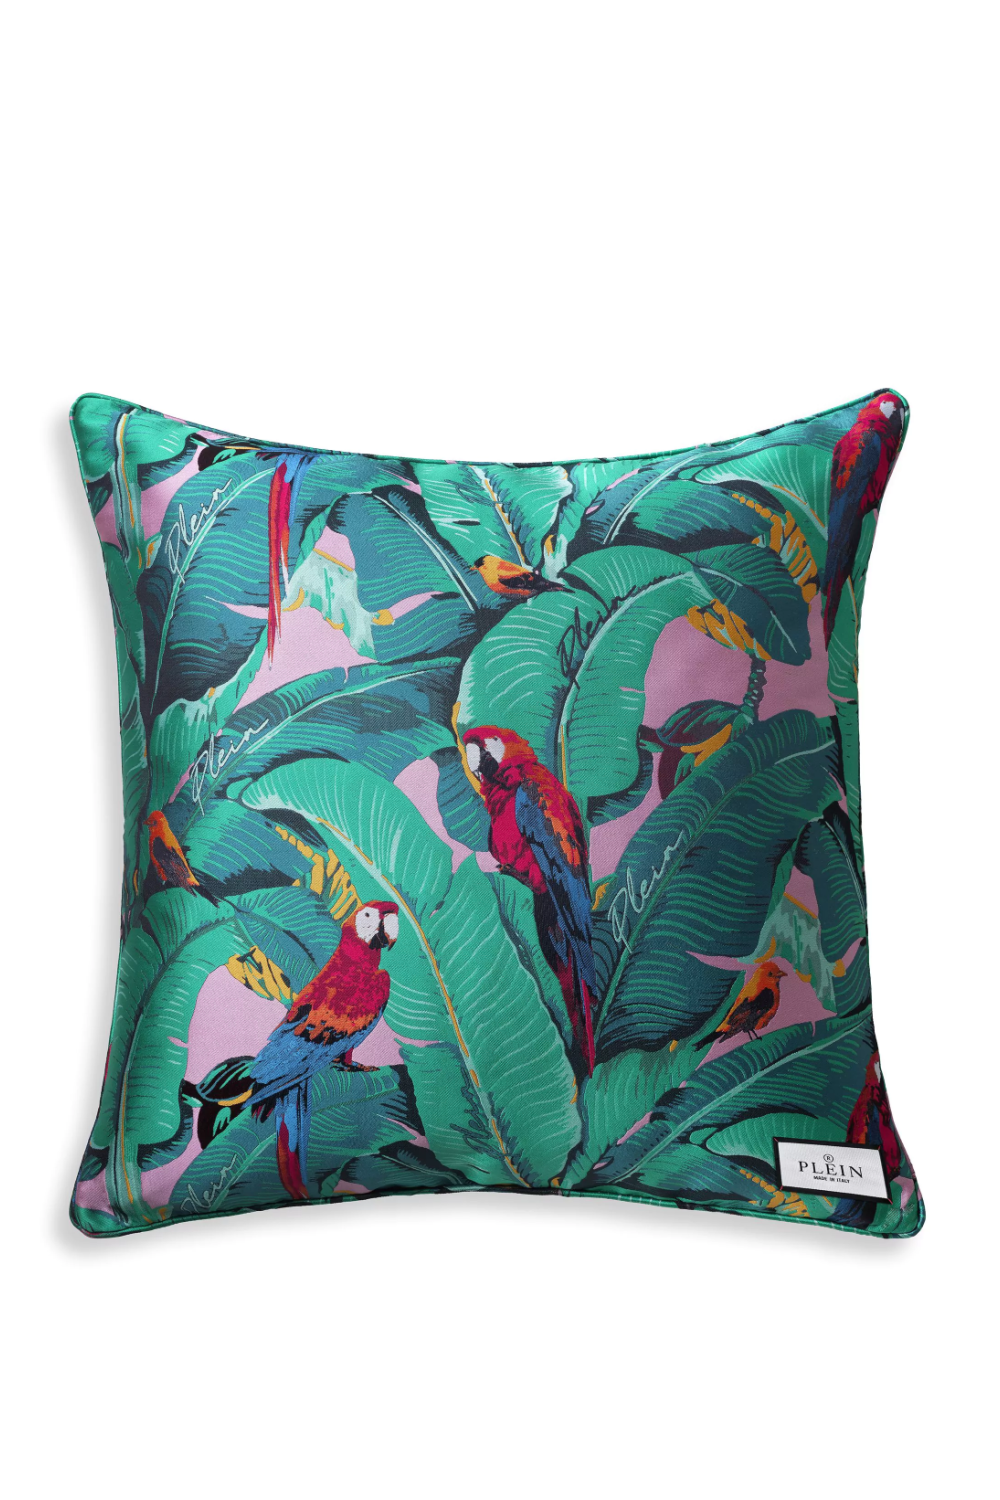 Wildlife Design Jacquard Cushion S Philipp Plein Parrot Philipp Plein Home Collection - OROA